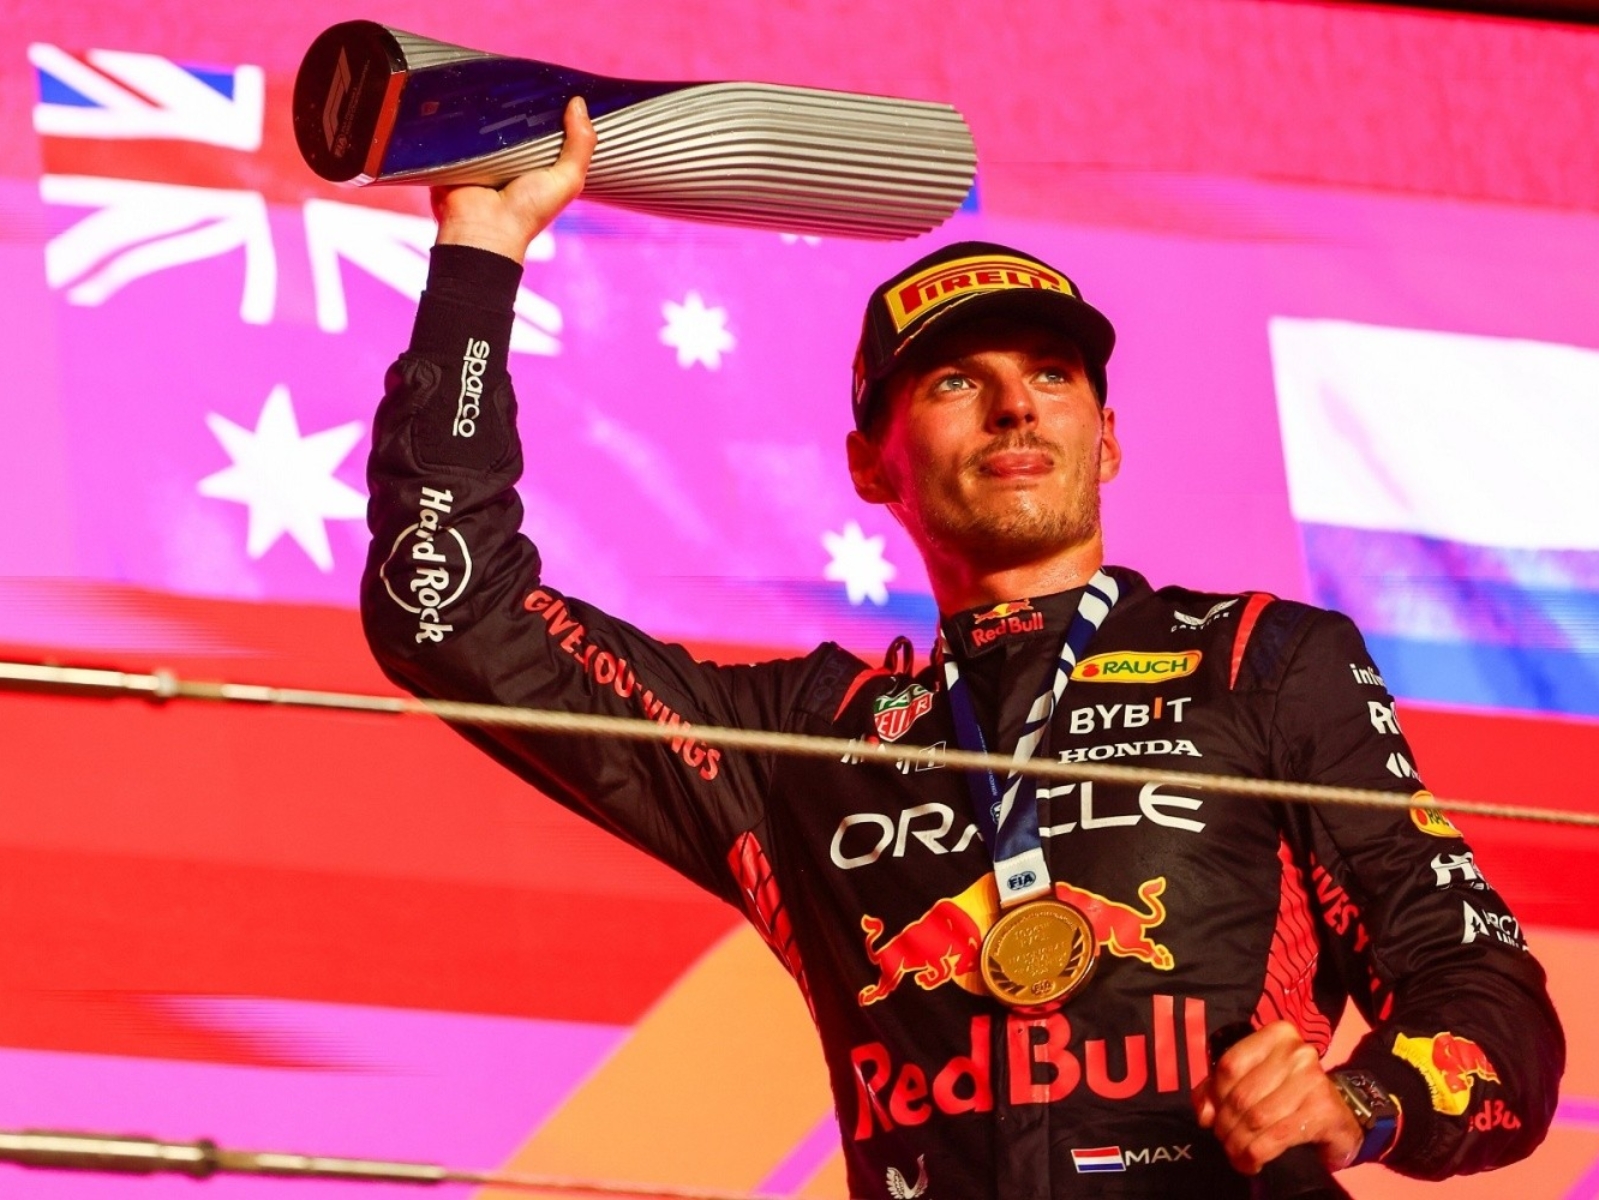 紅牛 Red Bull 車手 Max Verstappen 完成 F1 三連霸！卡達正賽取勝確定提前封王！